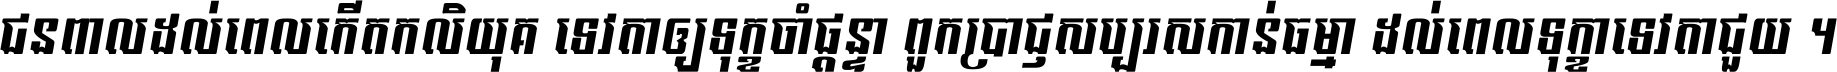 Kh Baphnom 017 EmEng Italic Italic